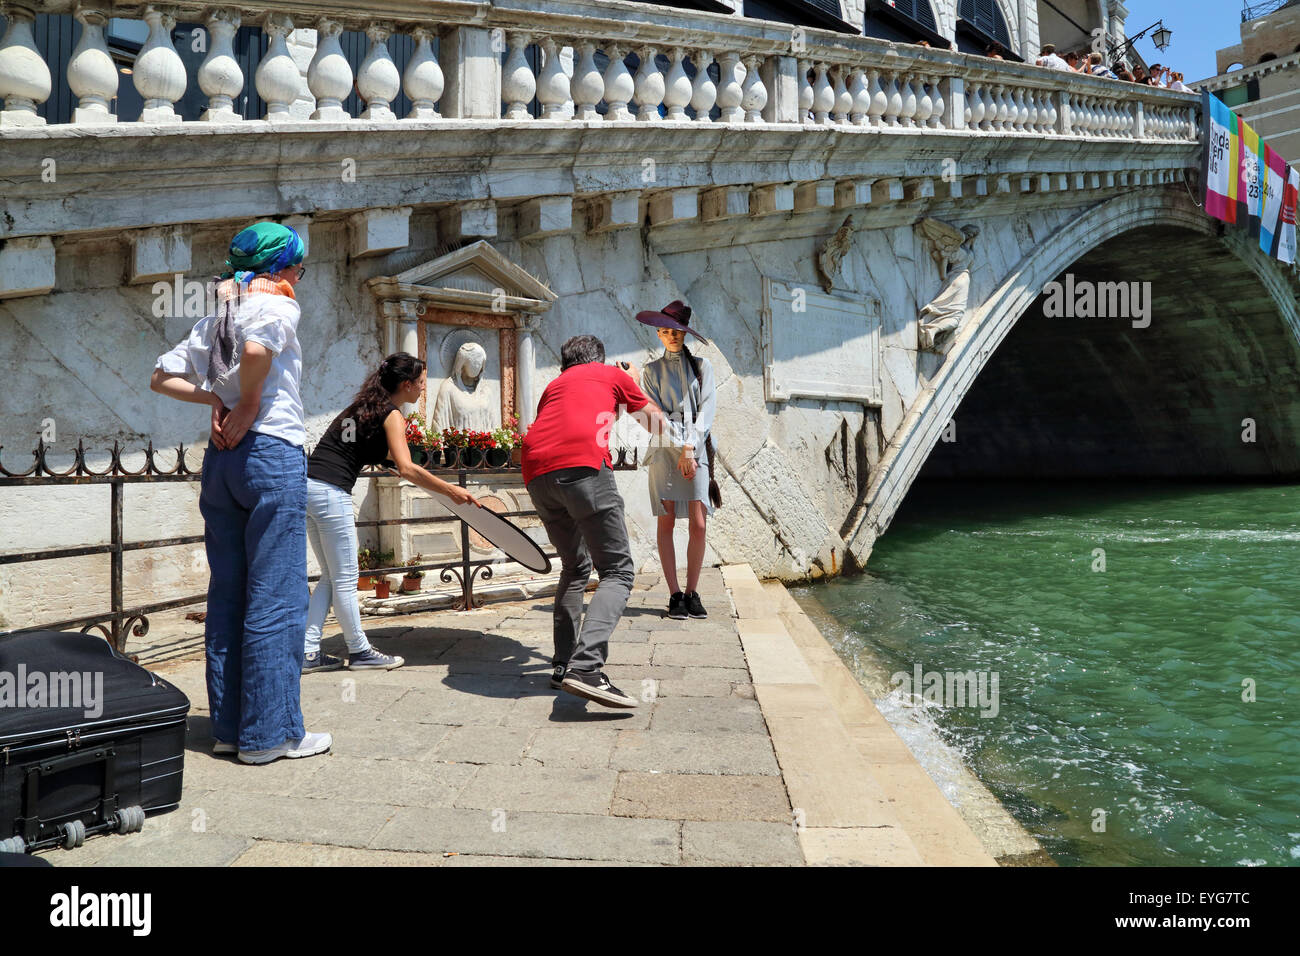 Professionelle Fashion Fotoshooting in Venedig, Ponte di Rialto-Brücke Stockfoto